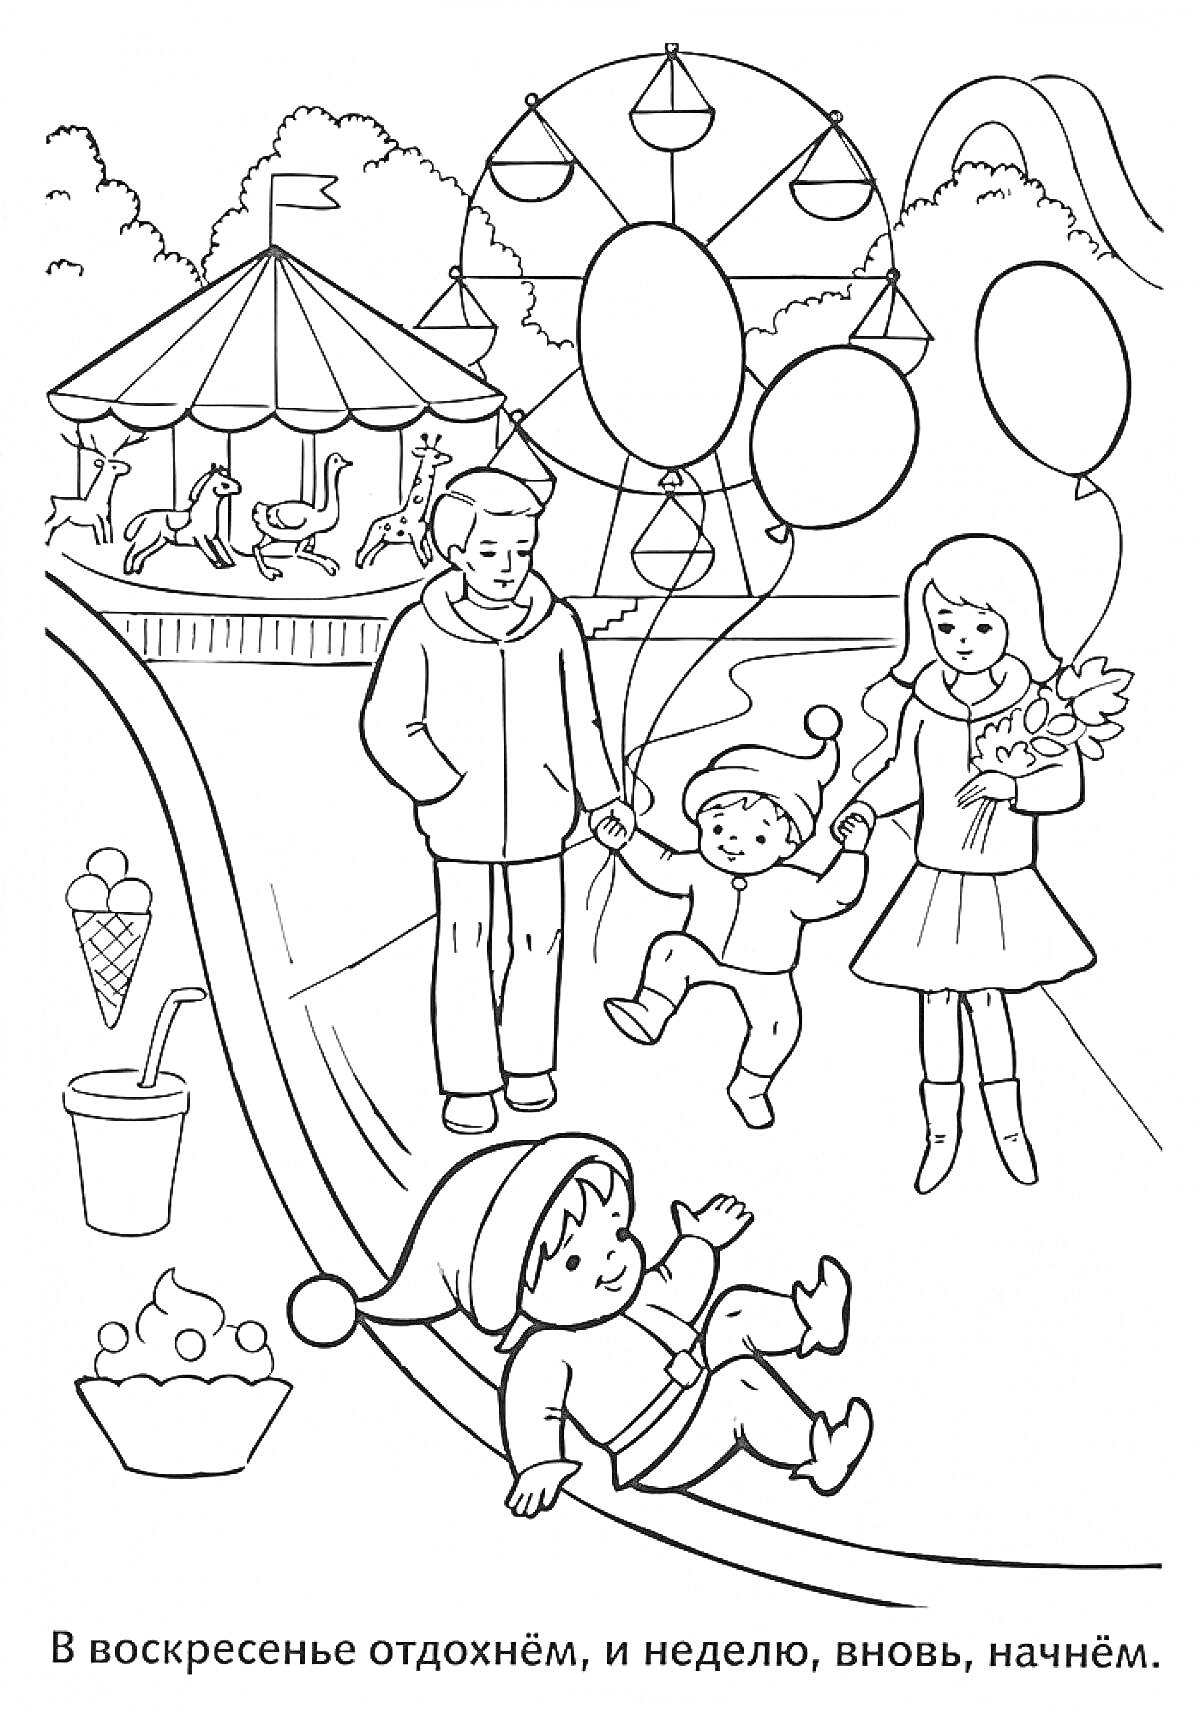 Семейное воскресенье в парке с аттракционами, мороженым и воздушными шарами